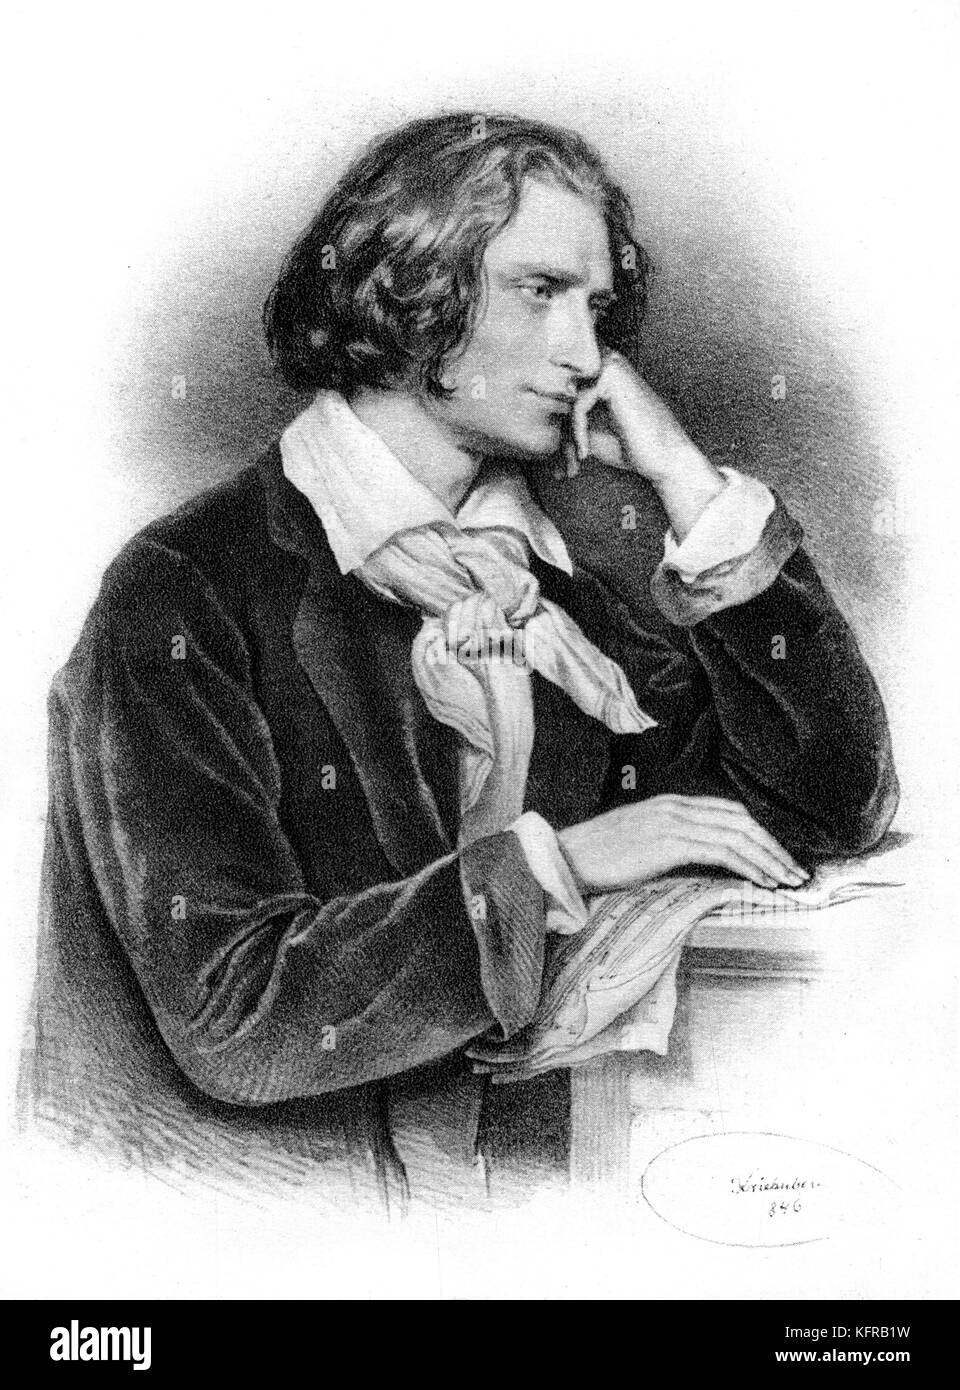 Franz Liszt - Porträt, 1846, Wien. Nach Lithografie von Kriehuber. Ungarische Pianist und Komponist, 22. Oktober 1811 - vom 31. Juli 1886. Stockfoto